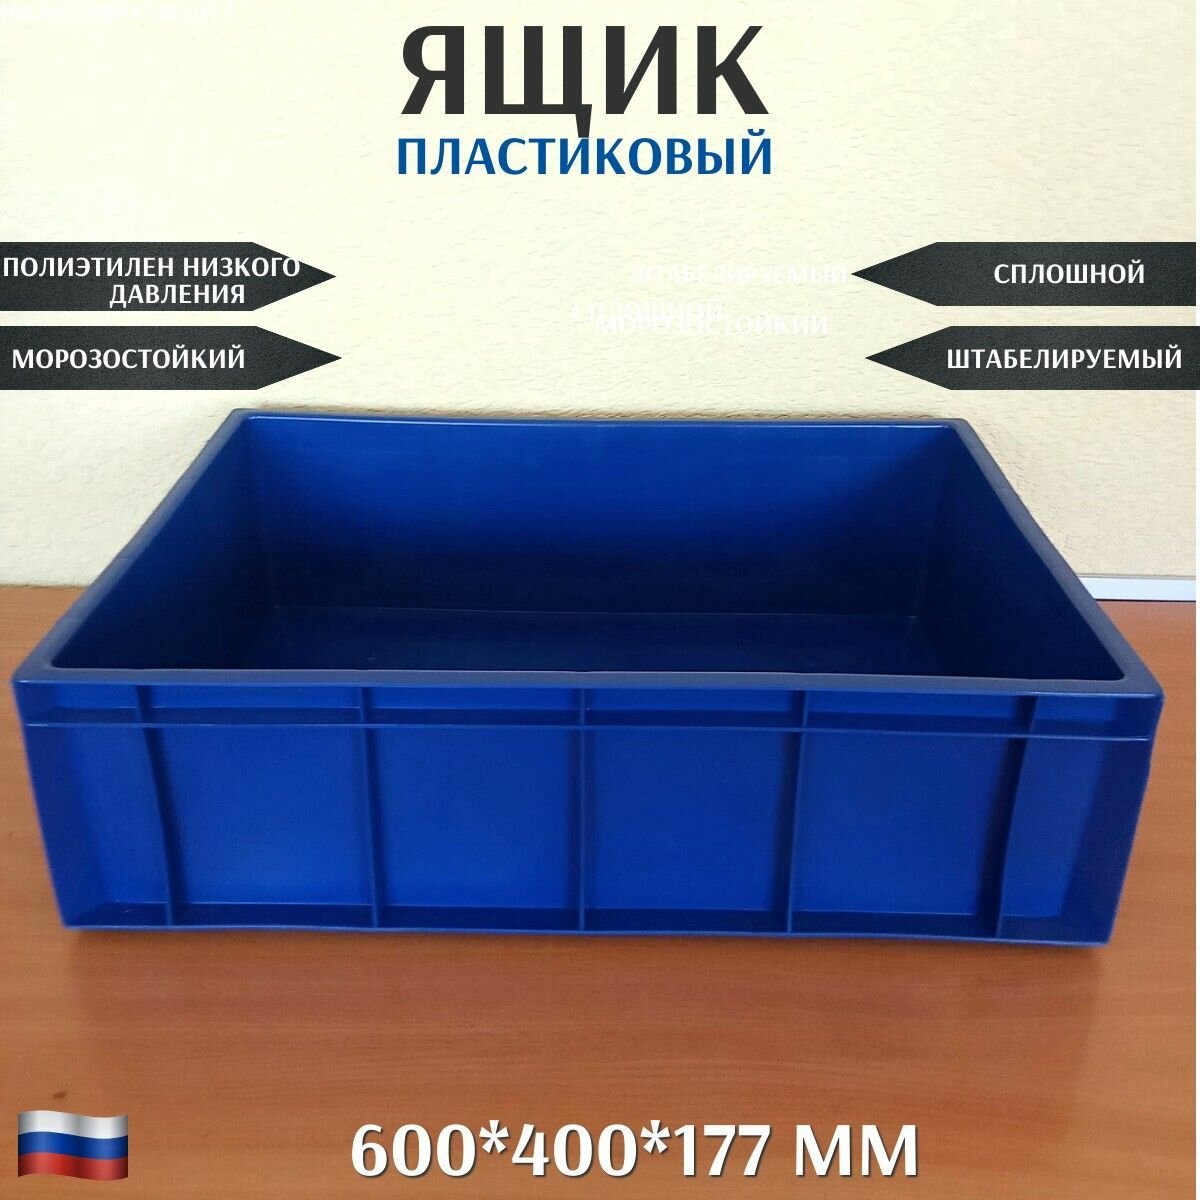 Ящик для хранения сплошной мясной штабелируемый из пластика 600*400*177 мм